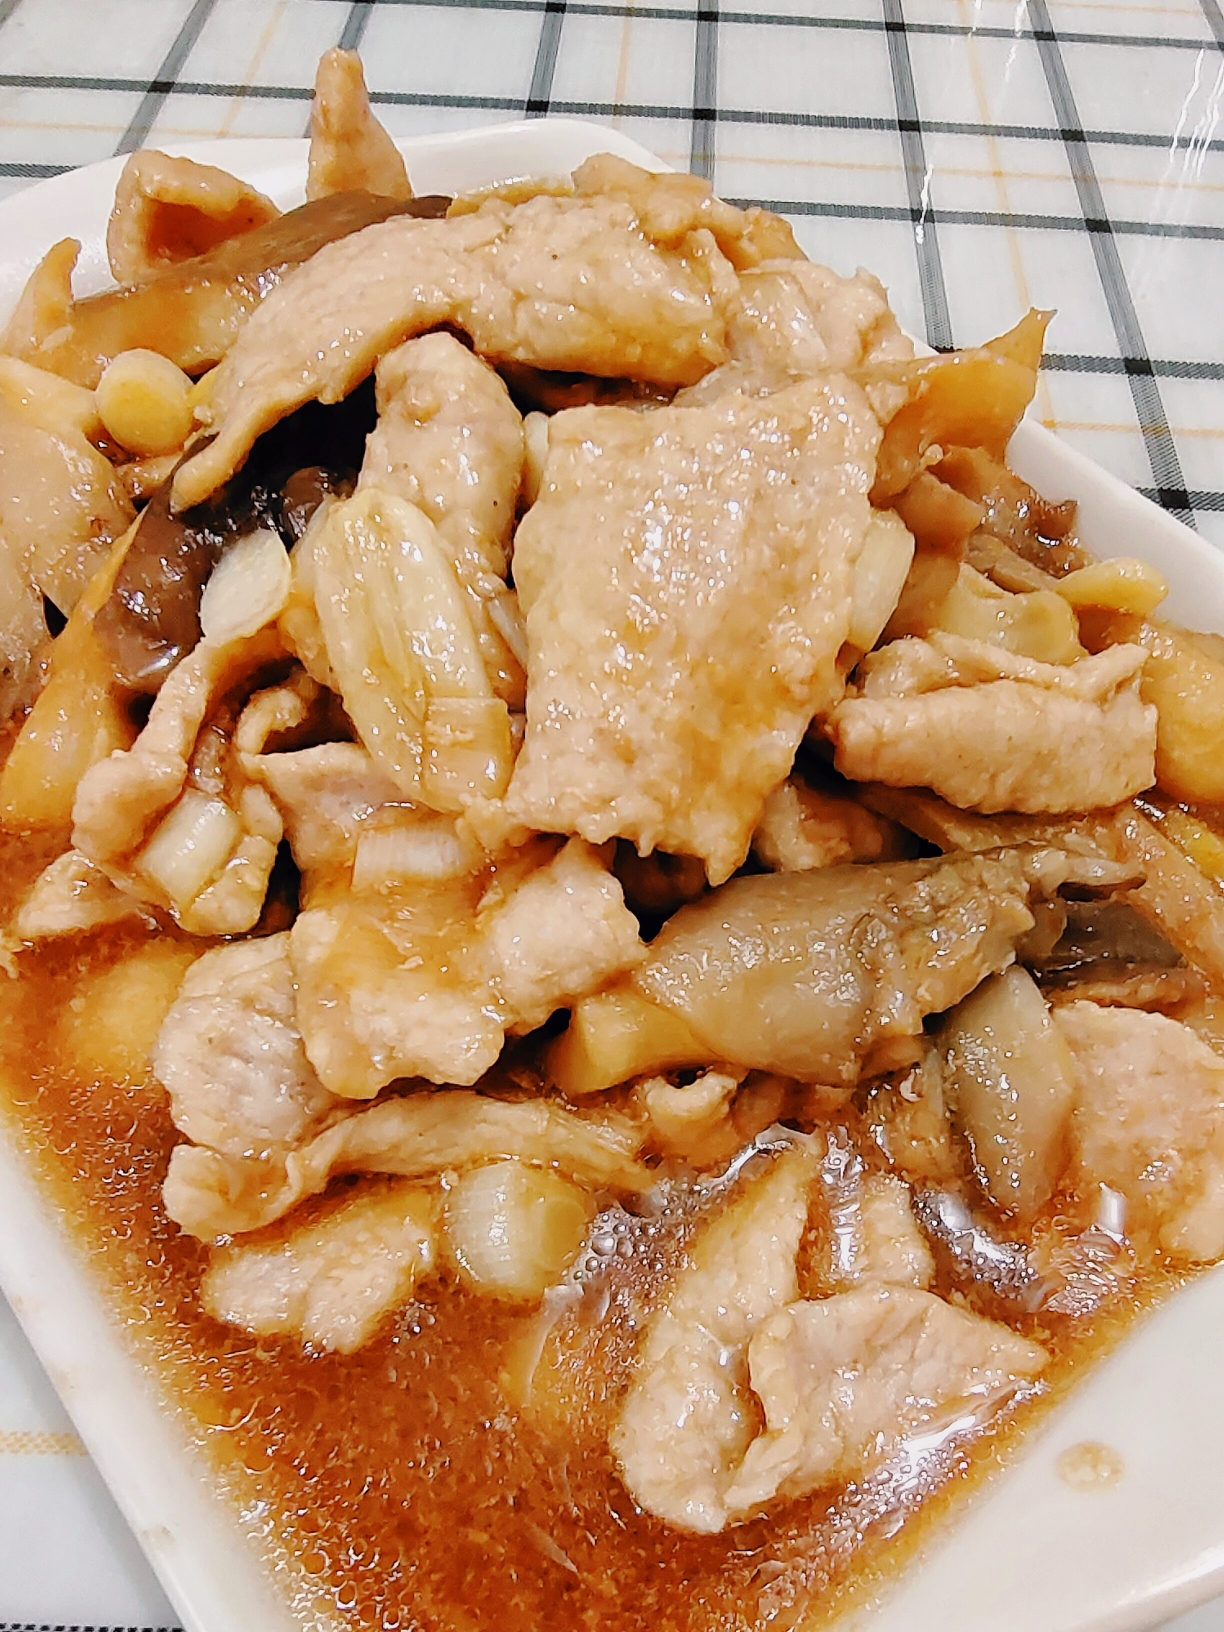 999道家常菜(9)平菇肉片